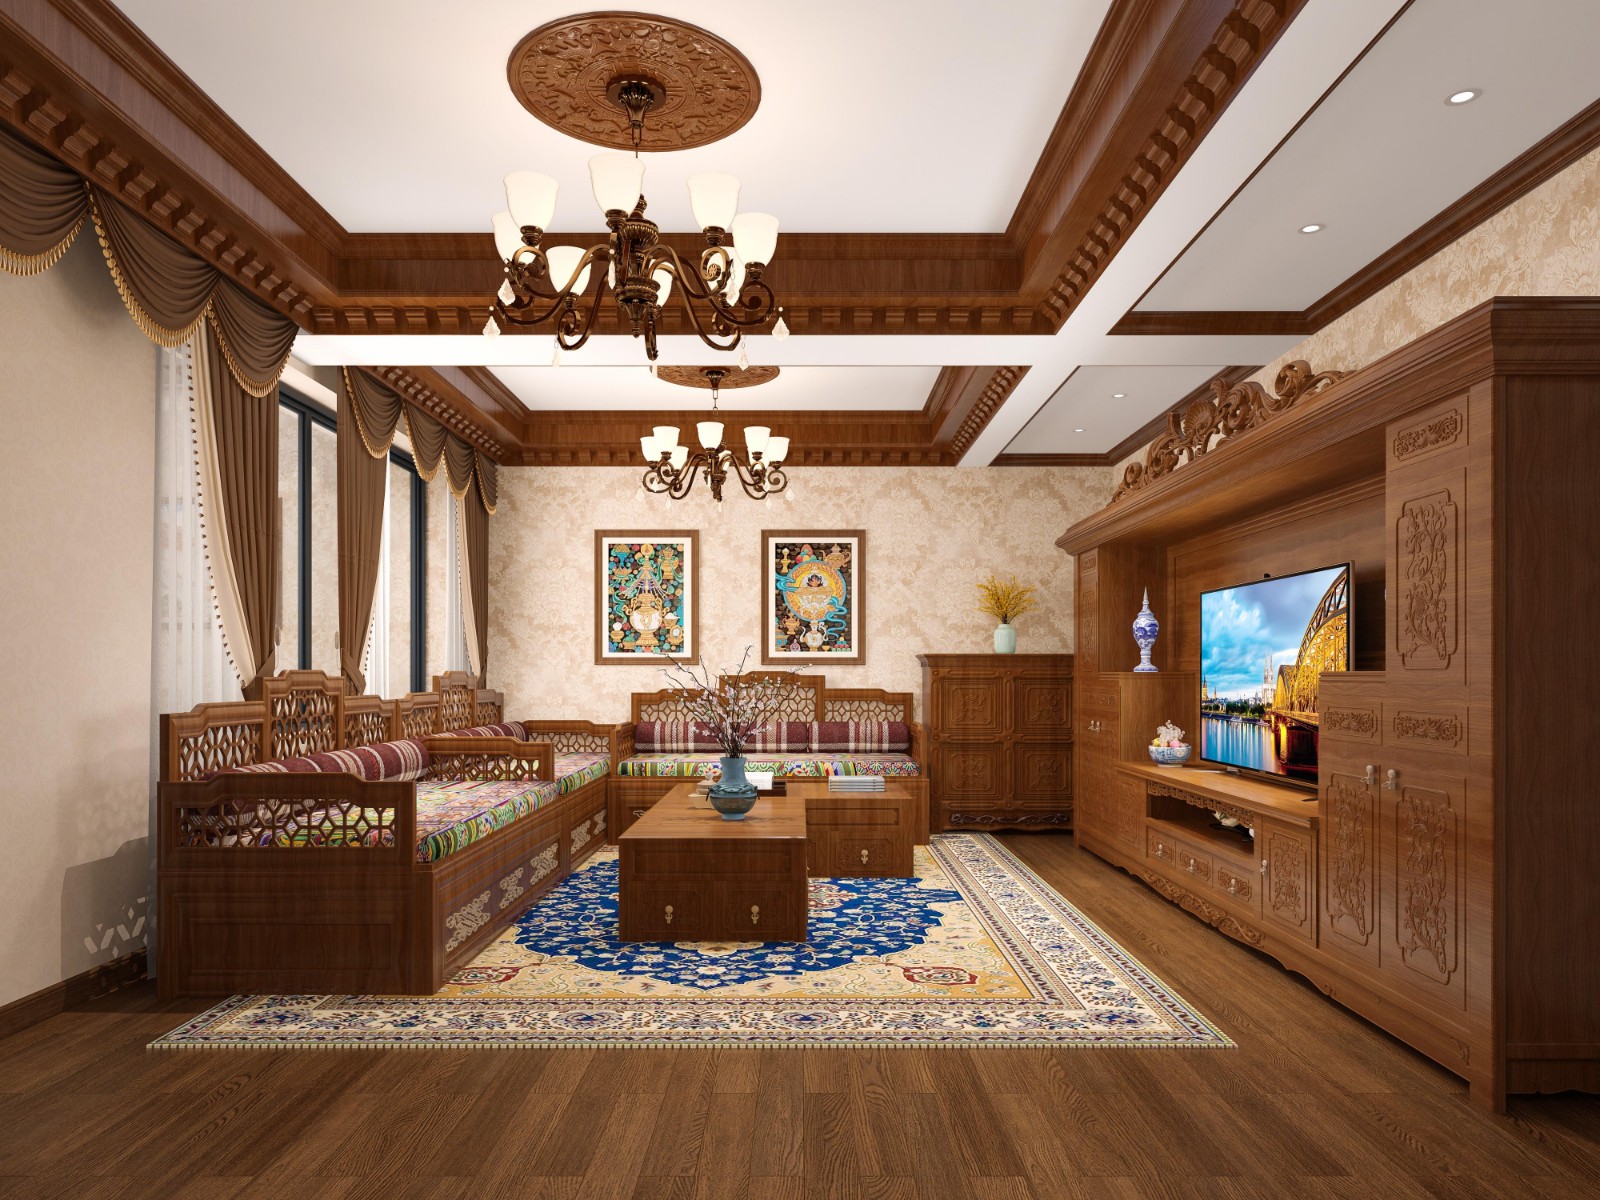 藏式家庭的生活 面积 214㎡ 风格 美式 户型 别墅 一层主要是客餐厅